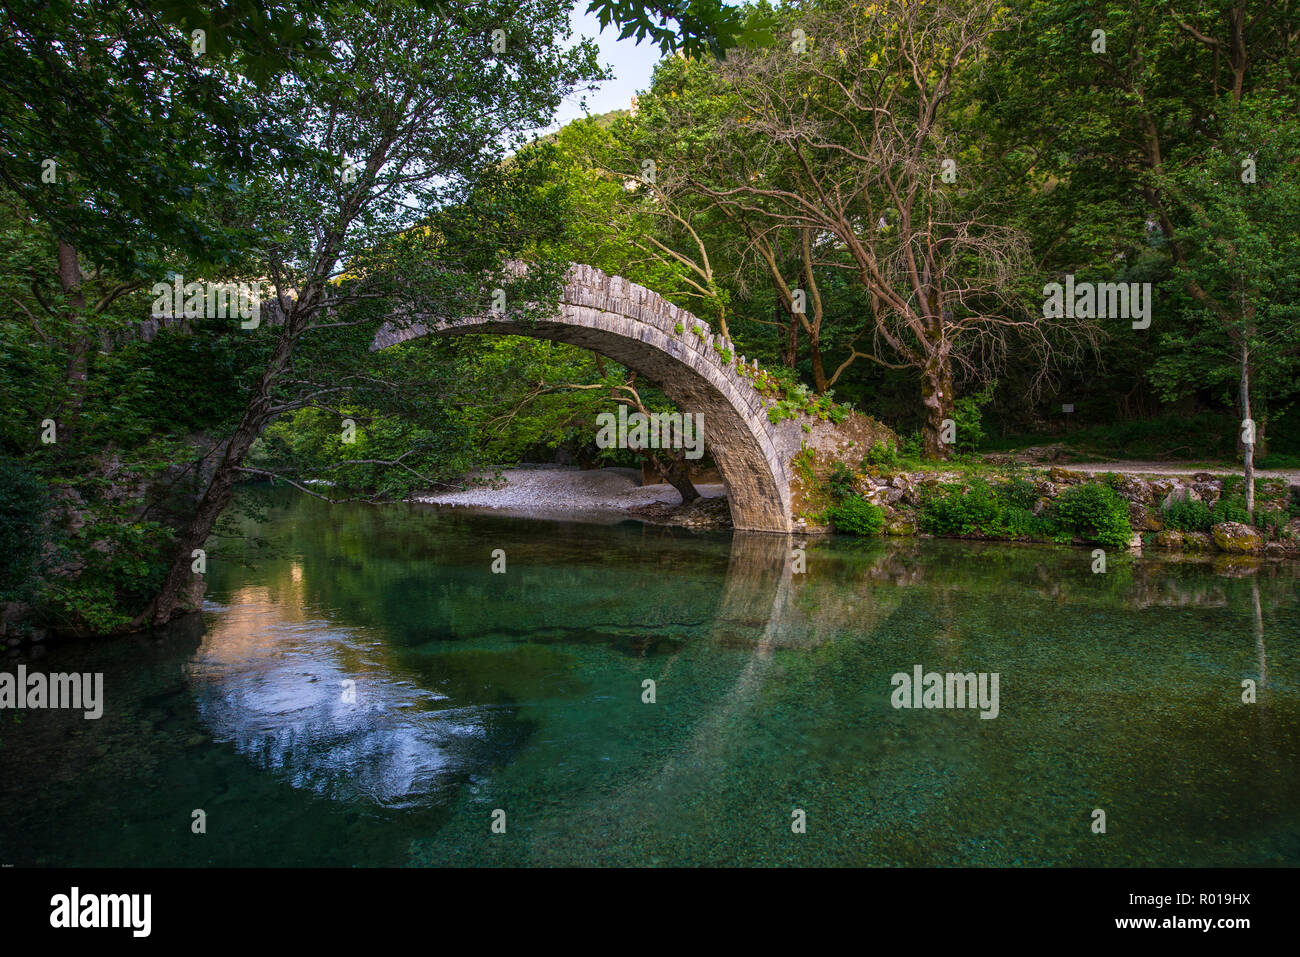 Grecia, de VIKOS AOOS. Histórico puente de piedra en el Parque Nacional, la UNESCO Vkos-Aoos global geo park, Foto de stock